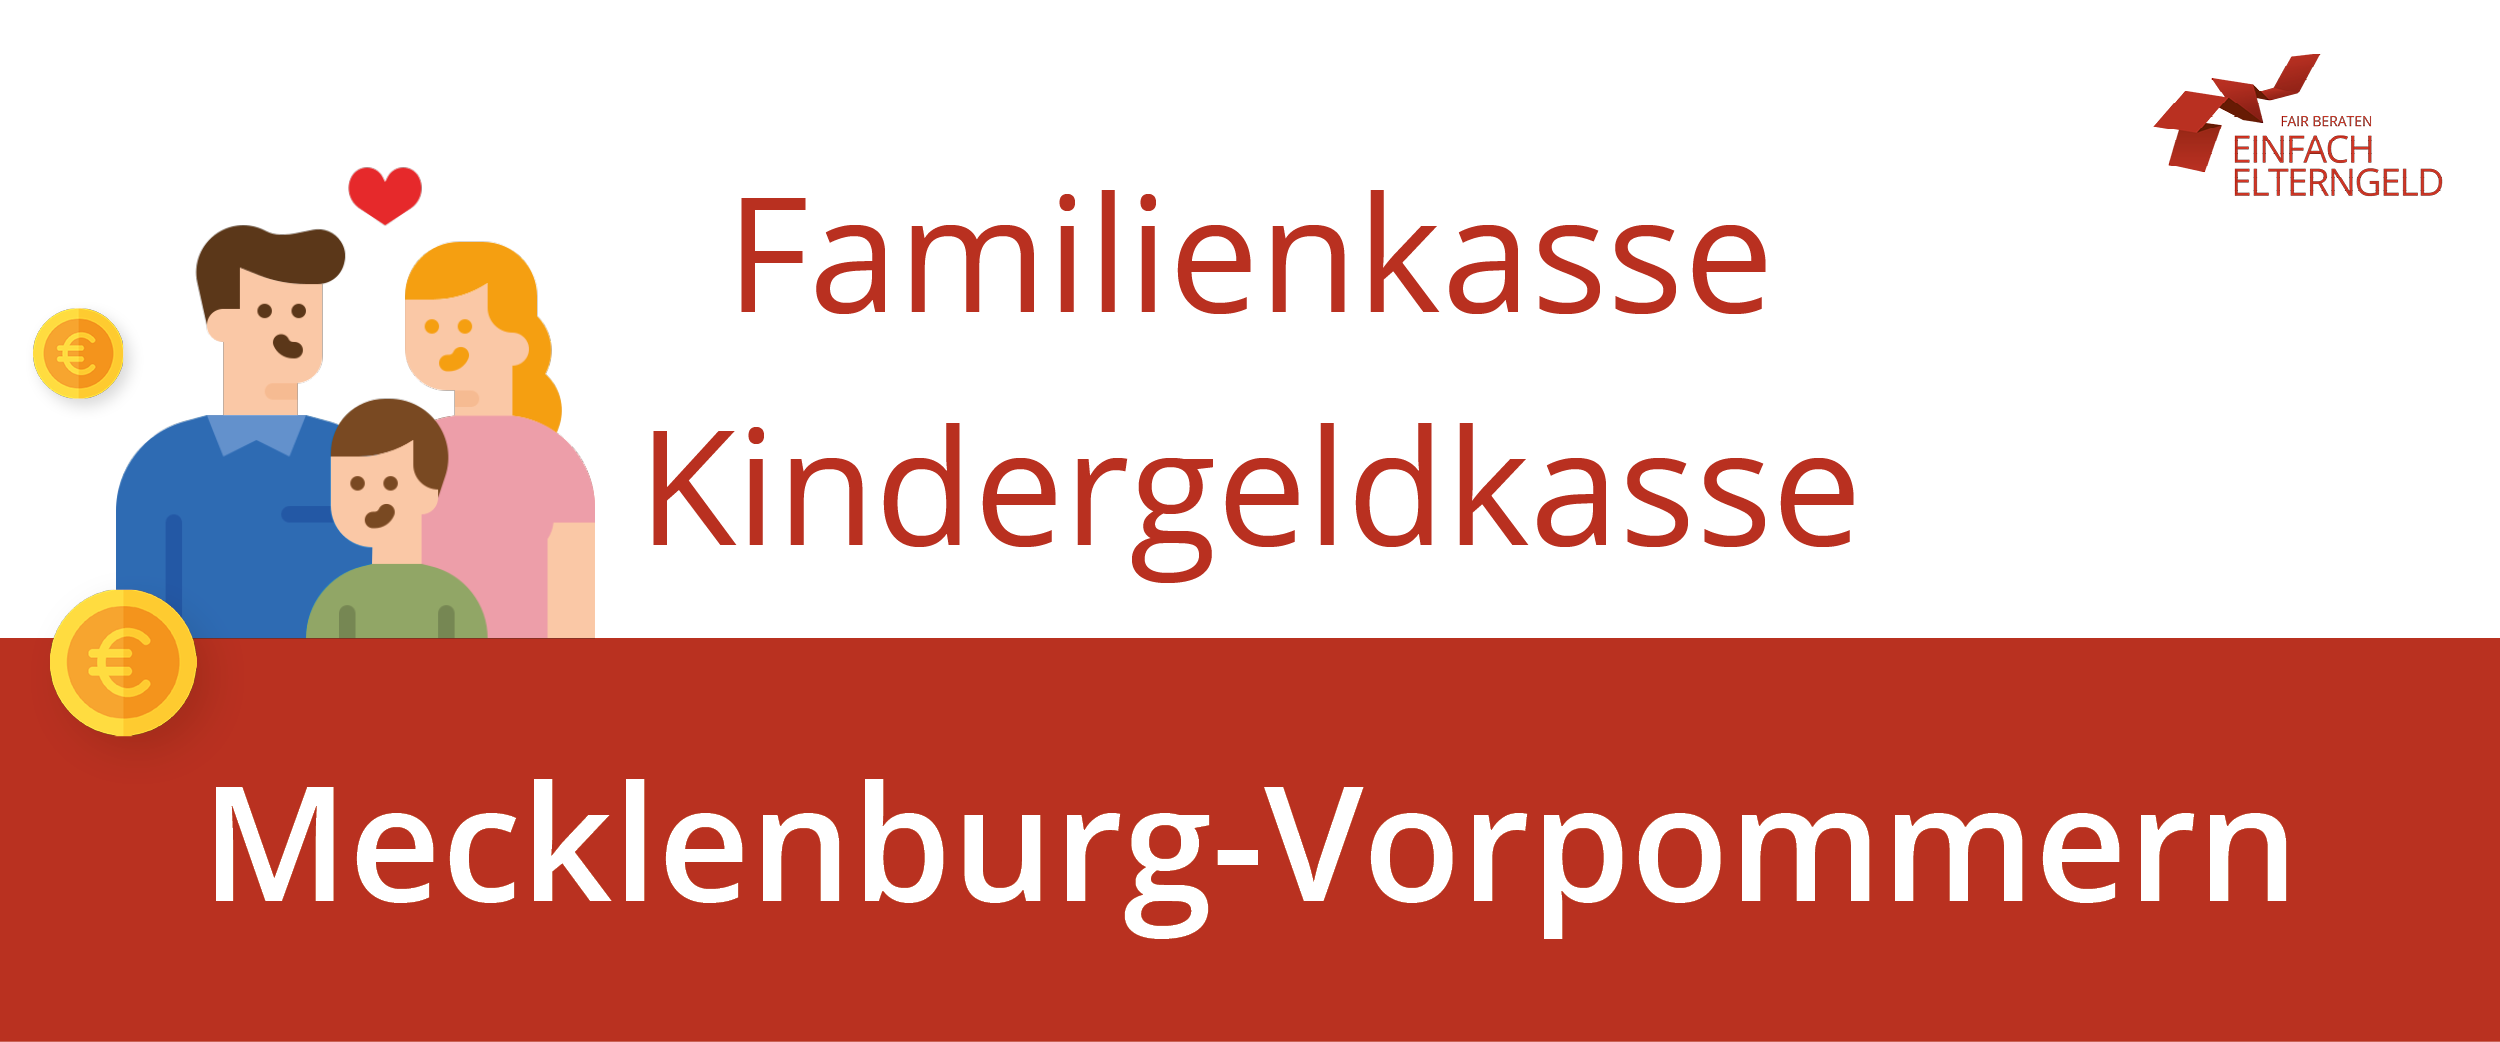 Die Familienkasse Mecklenburg-Vorpommern erreichen Sie an diesen Standorten.